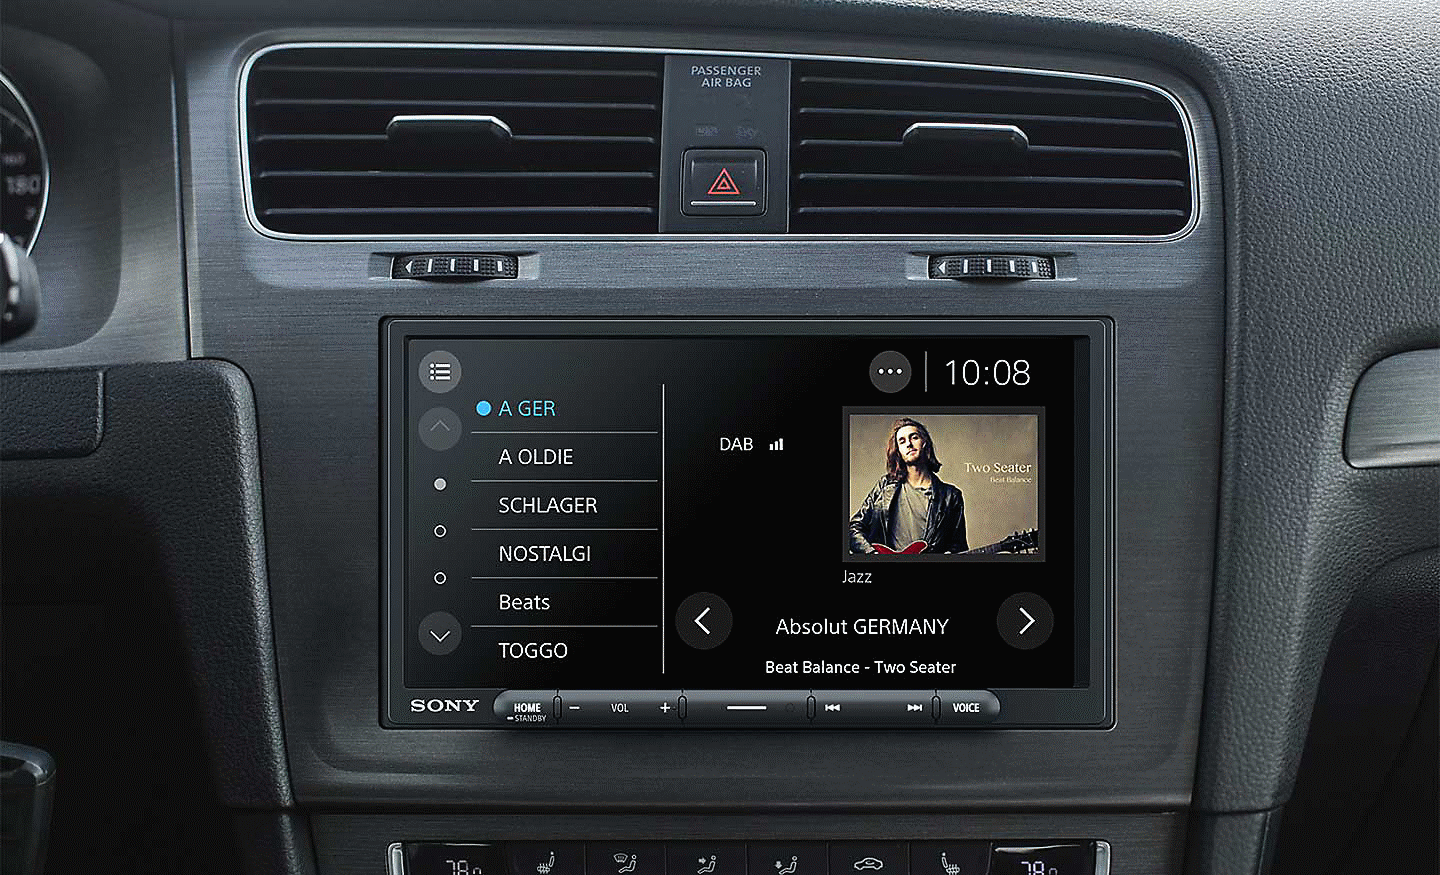 Imagem do XAV-AX4050 num tablier com interface de rádio DAB no ecrã